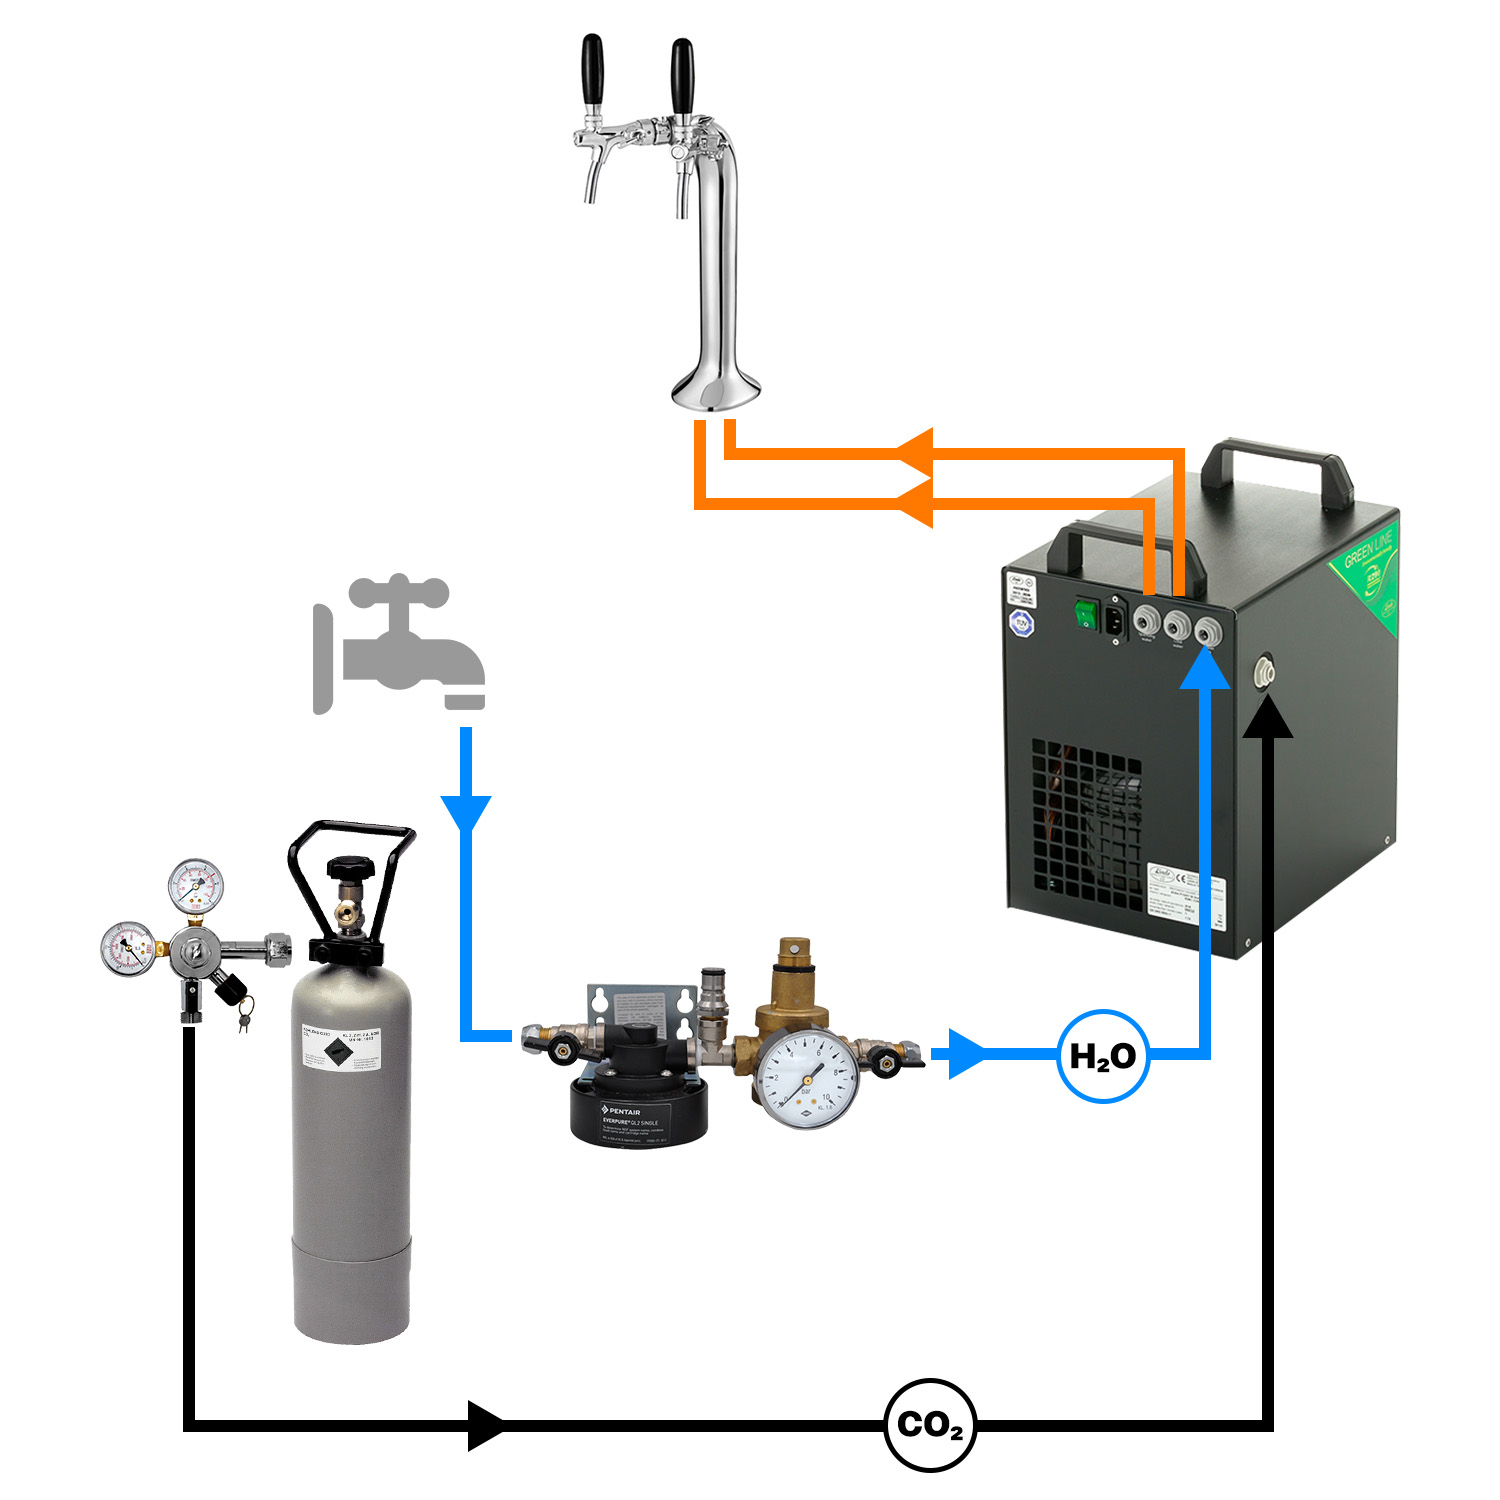 [Paket] Complete set - Dispensador de agua, maquina agua con gas,  gasificadora de agua - SODA PYGMY, 2 grifo, Green Line 